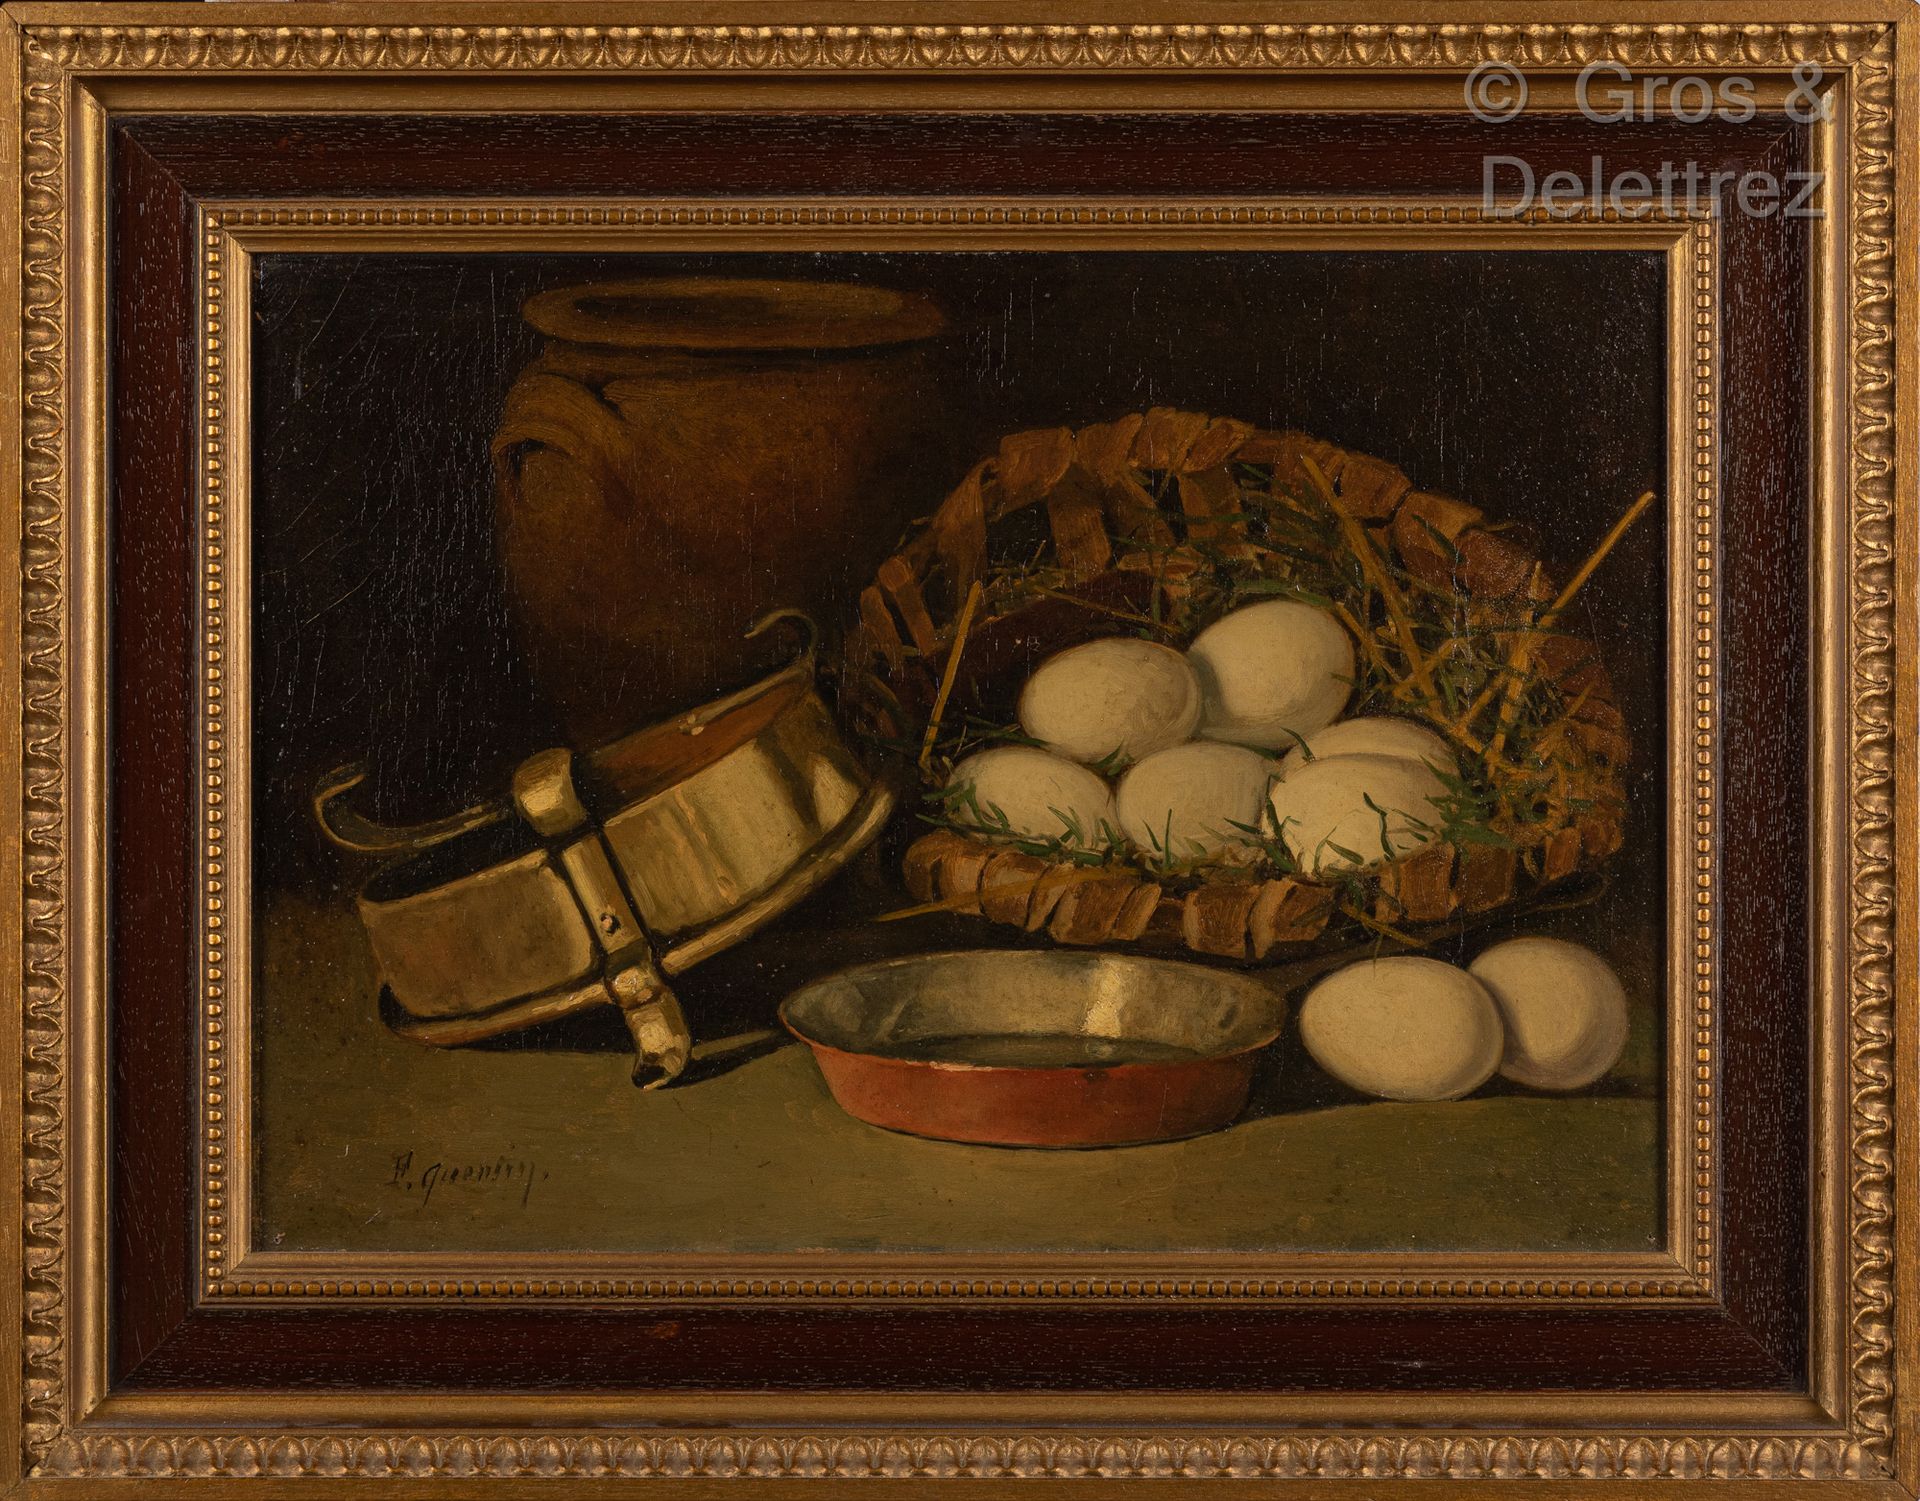 Null F.昆廷（20岁）

鸡蛋的静物

布面油画，右下角有签名

33 x 46 厘米